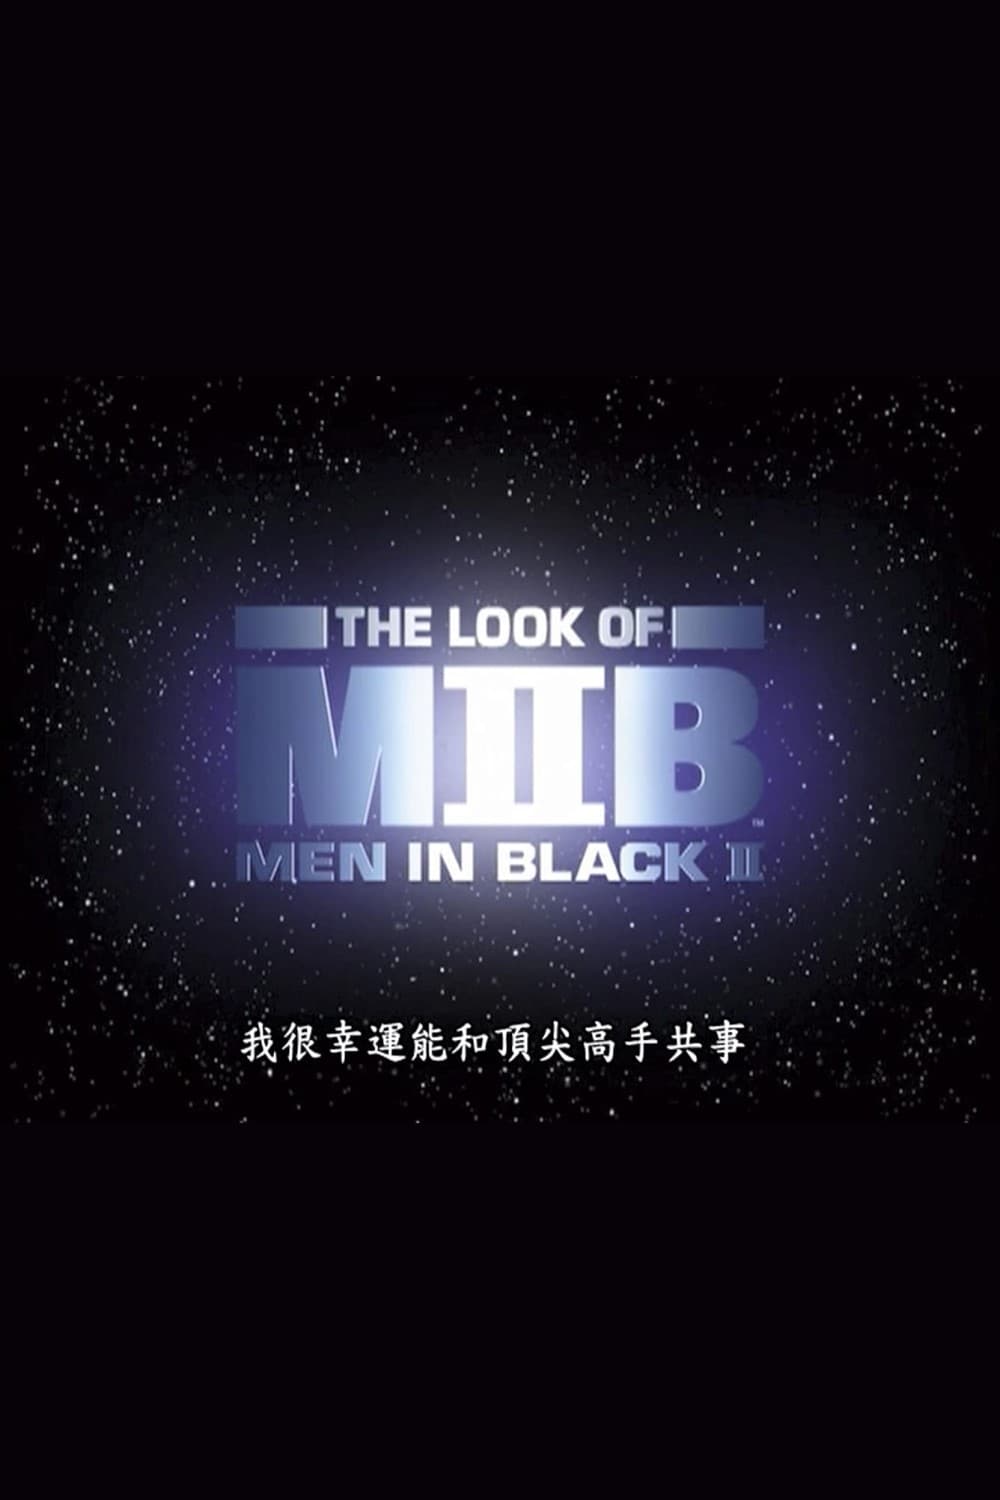 Design in Motion: The Look of 'Men in Black II' (2002)